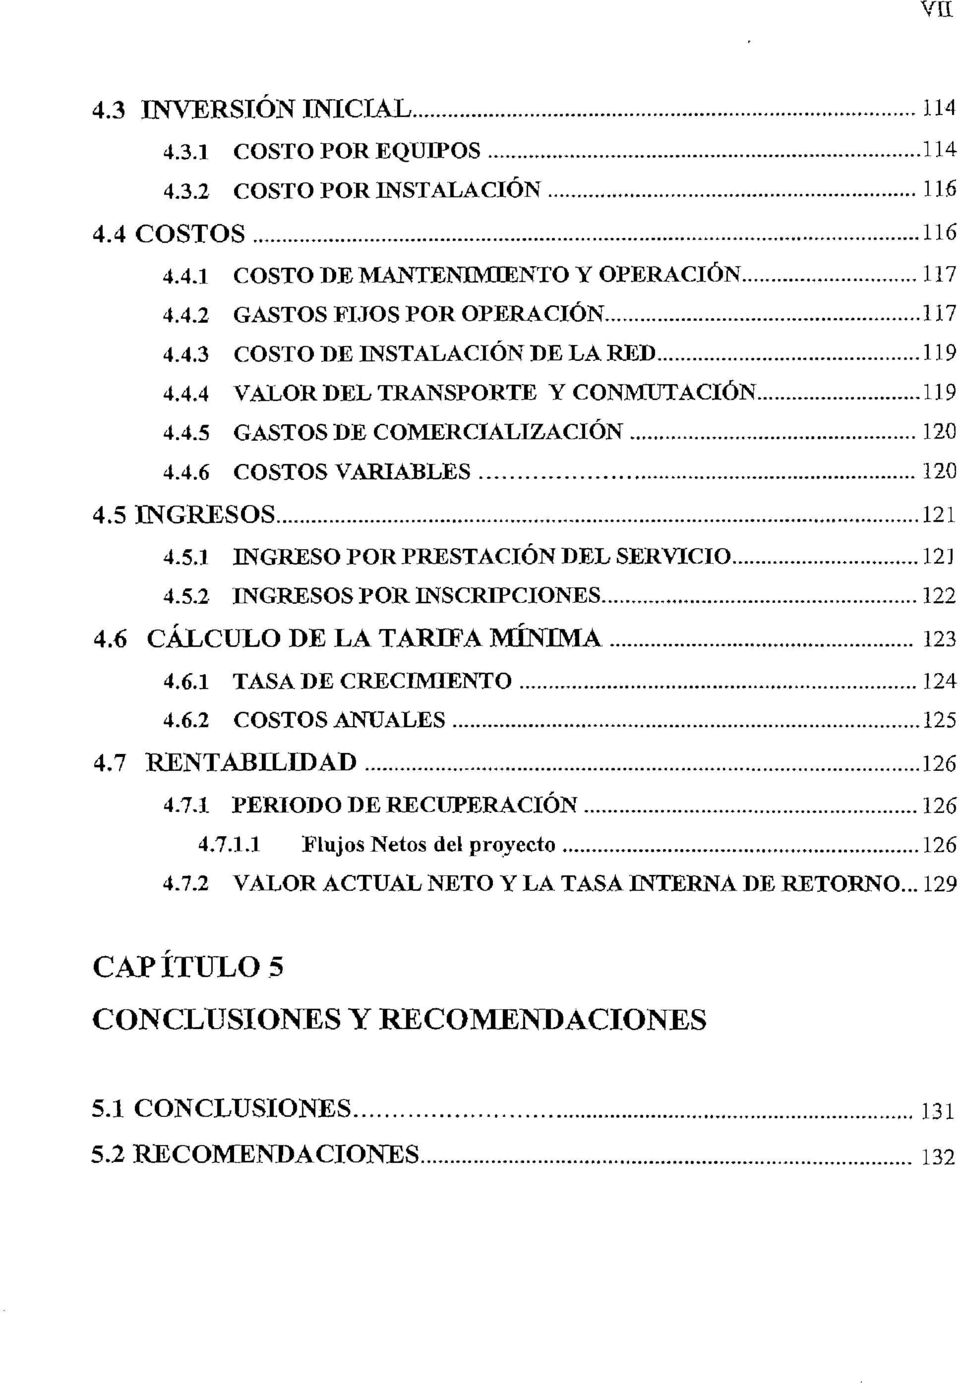 6 CÁLCULO DE LA TARIFA MÍNIMA 123 4.6.1 TASADE CRECIMIENTO 124 4.6.2 COSTOS ANUALES 125 4.7 RENTABILIDAD 126 4.7.1 PERIODO DE RECUPERACIÓN 126 4.7.1.1 Flujos Netos del proyecto 126 4.7.2 VALOR ACTUAL NETO Y LA TASA INTERNA DE RETORNO.